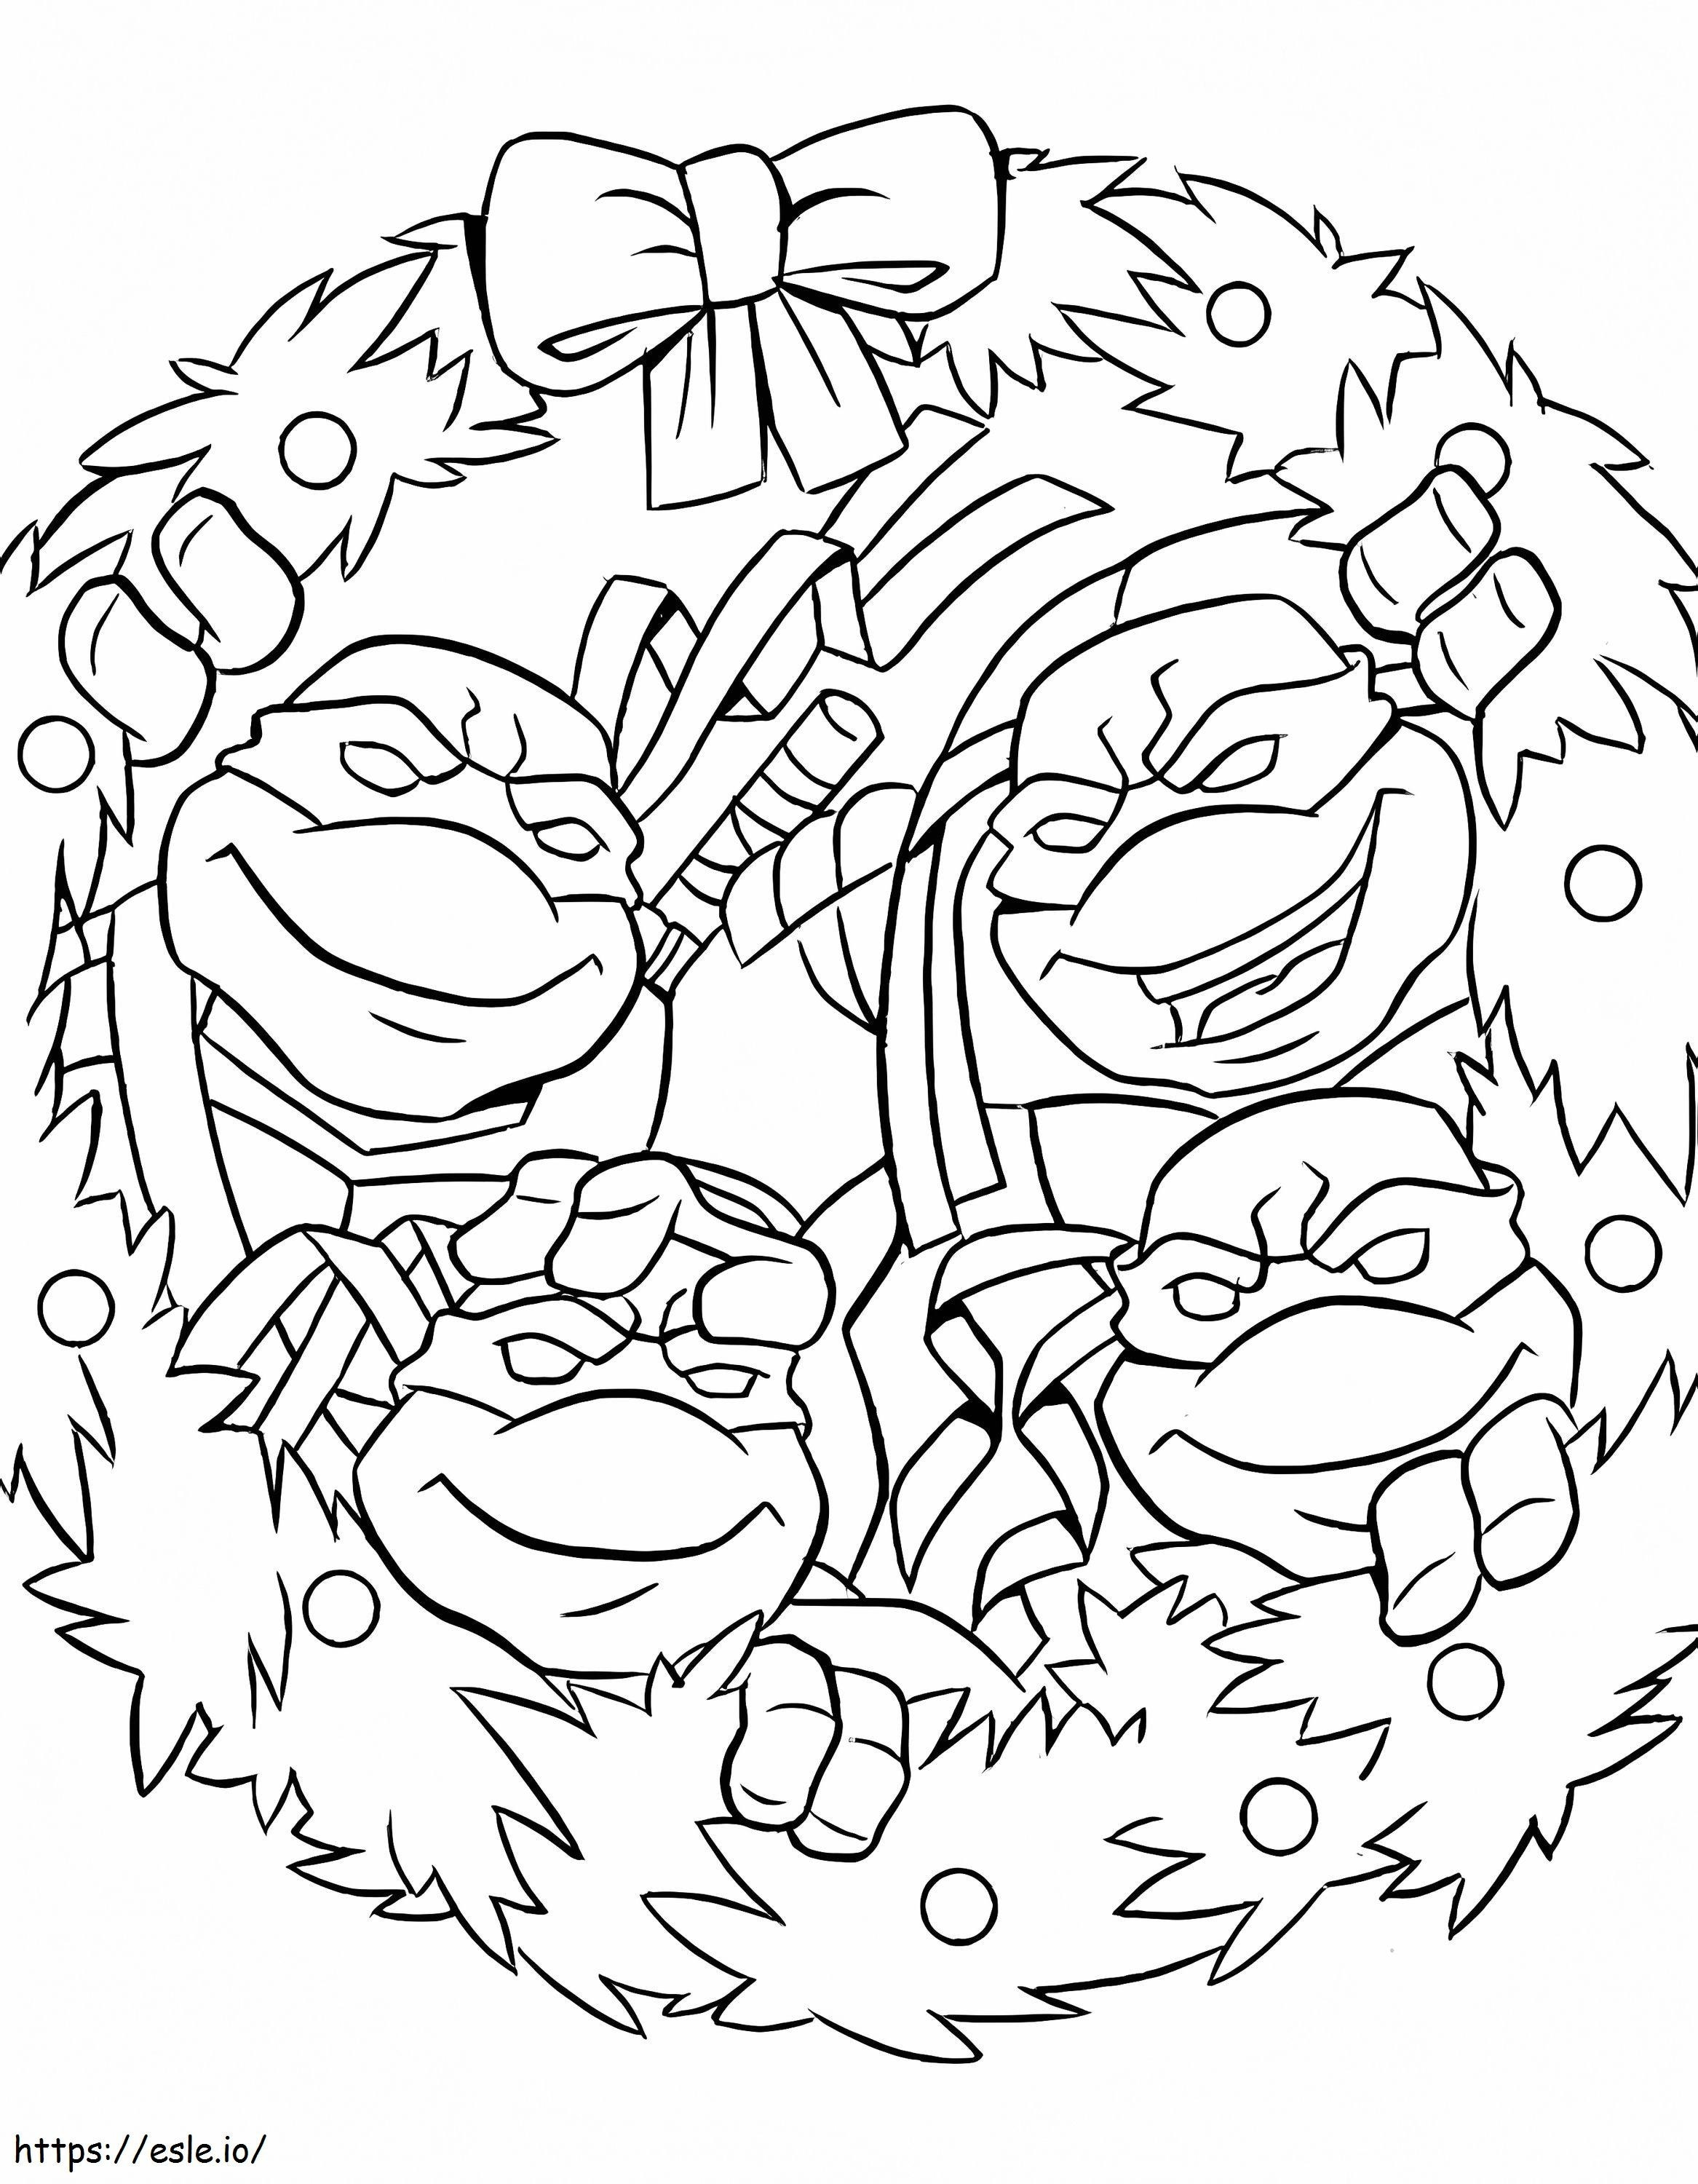 Ninja Turtles zu Weihnachten ausmalbilder